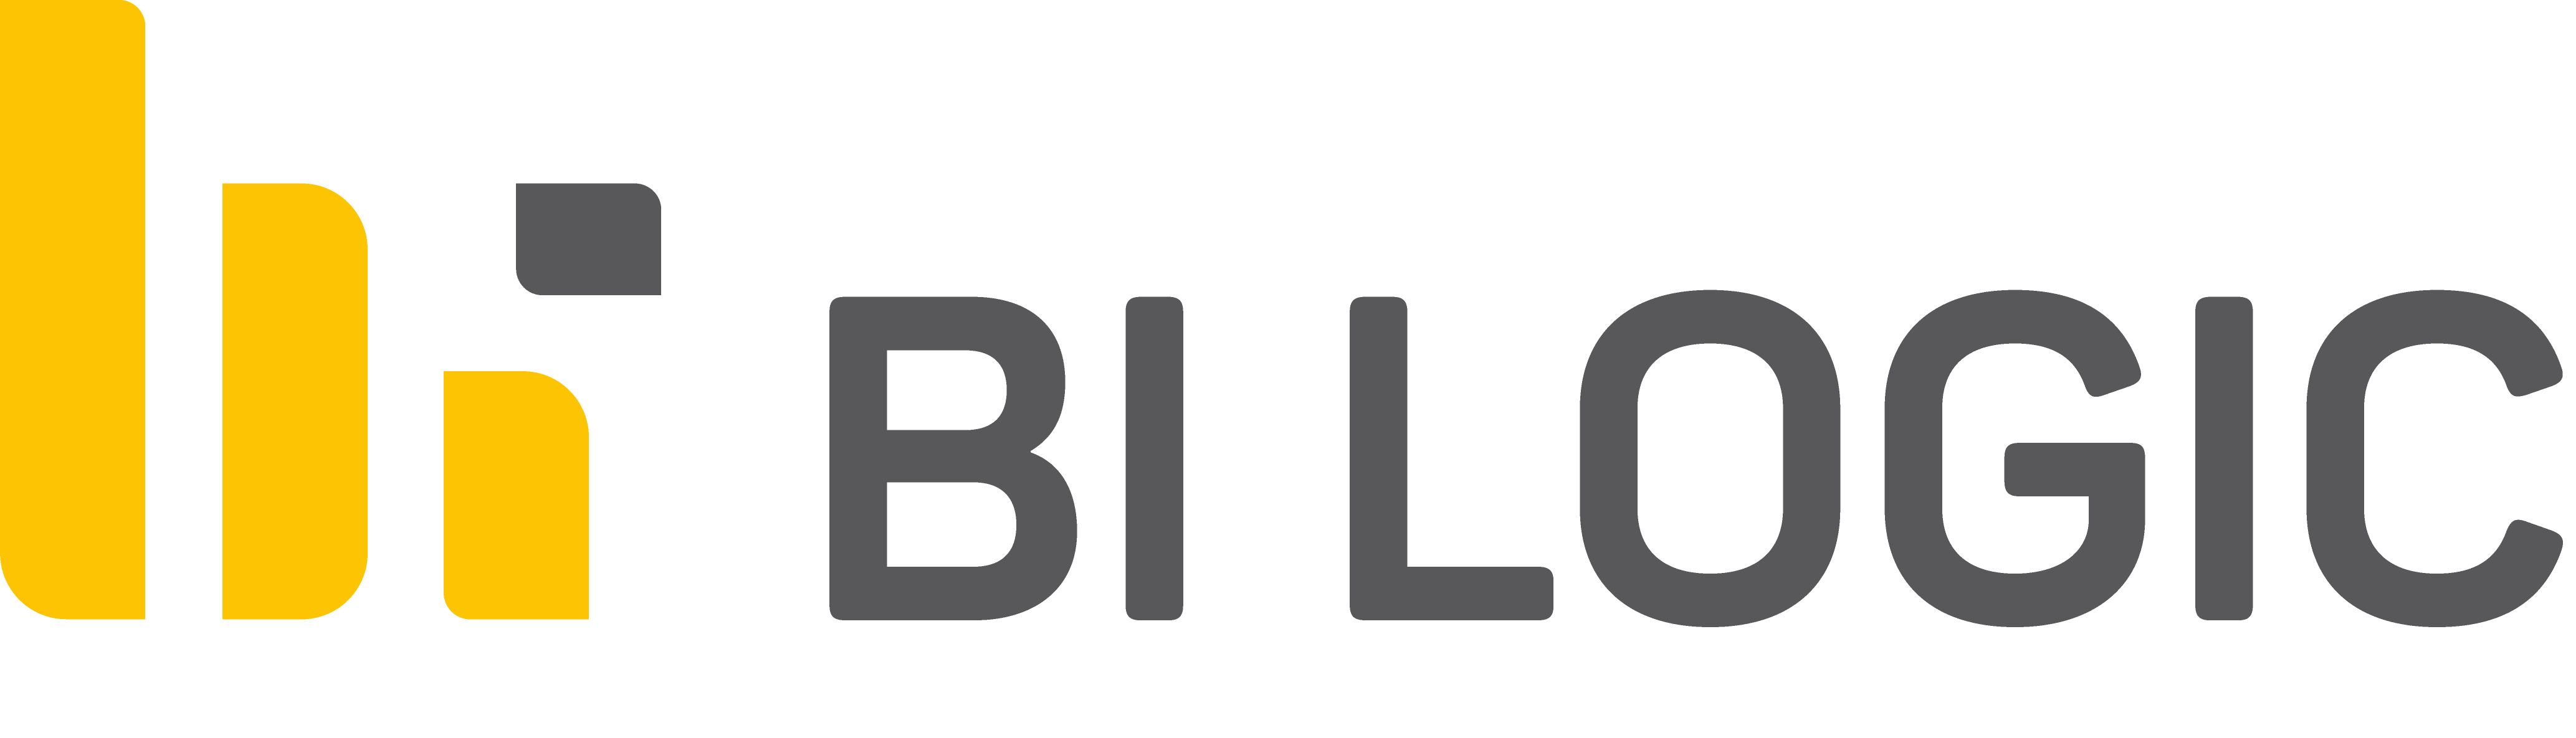 BiLogic logo